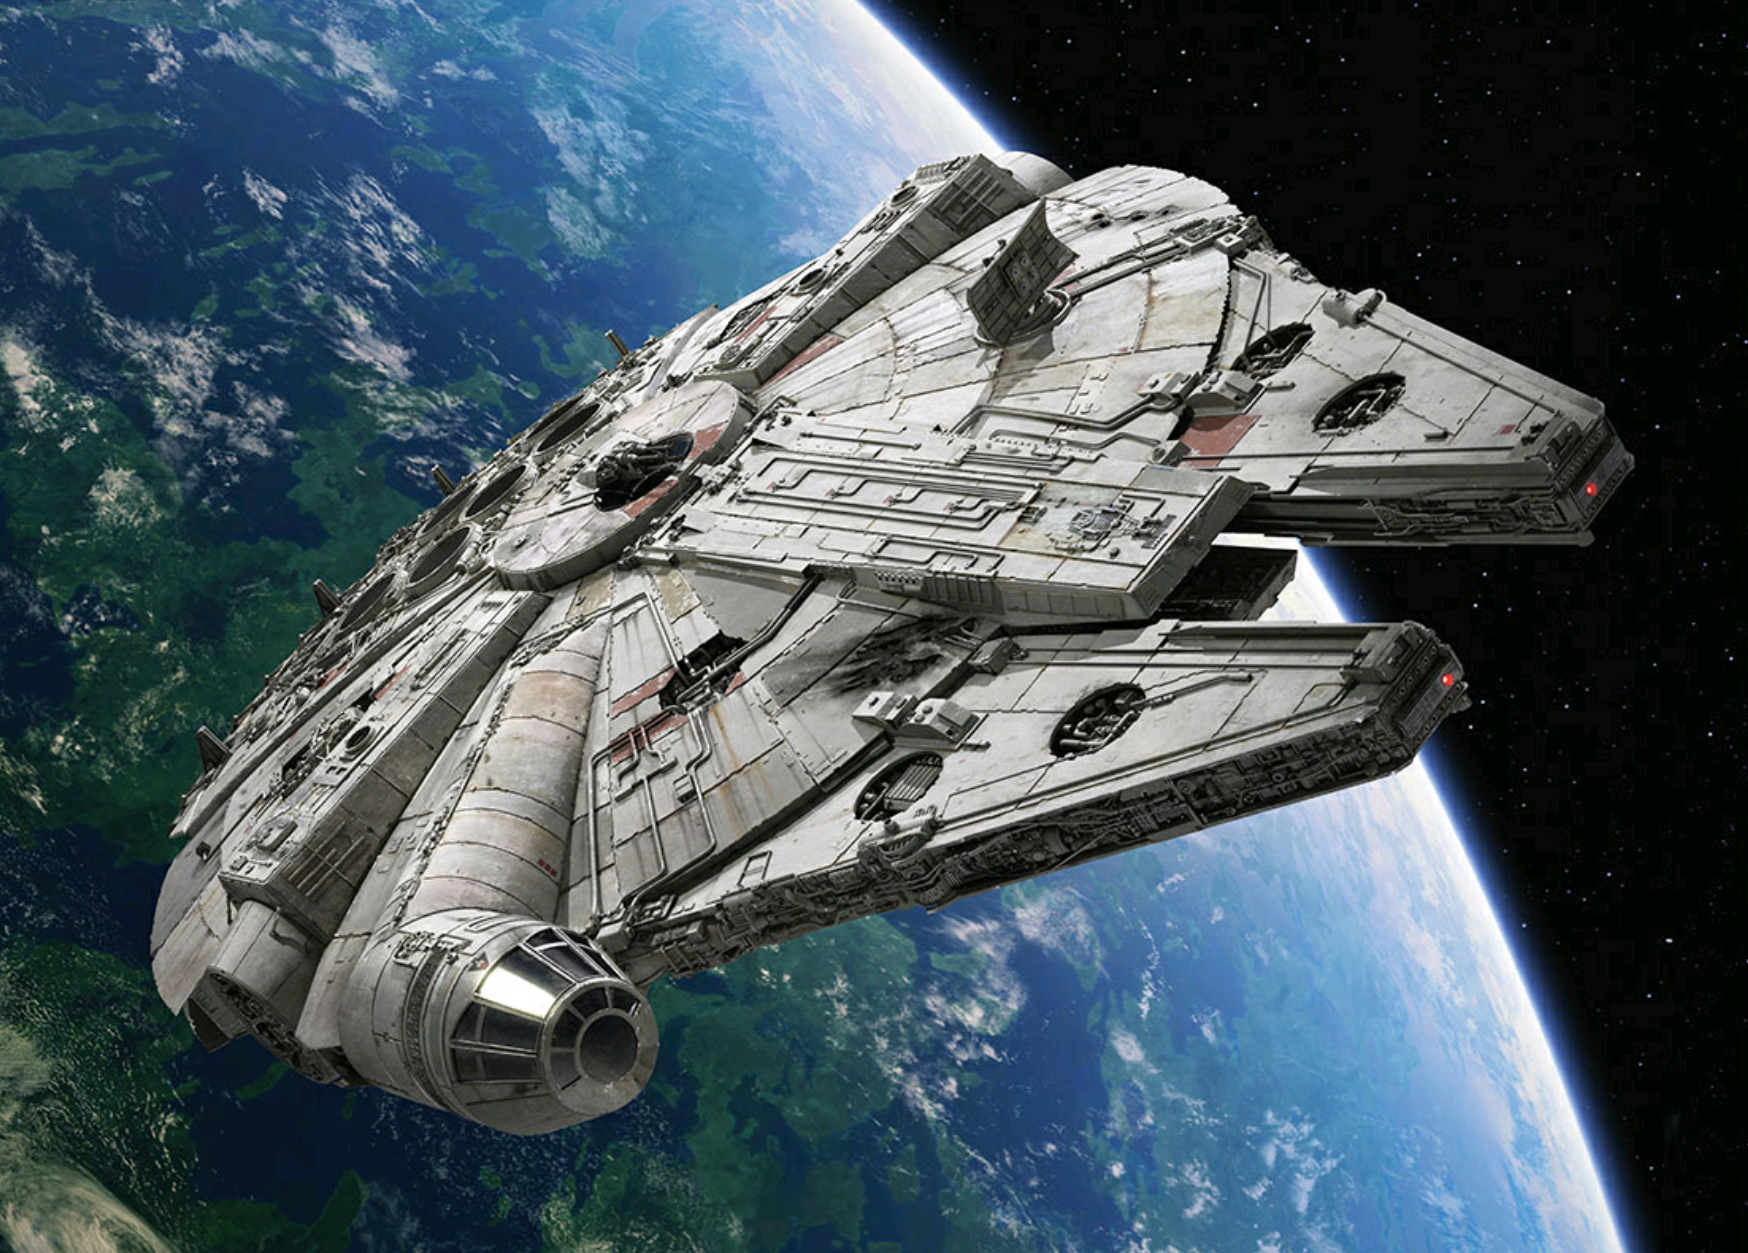 Il Millennium Falcon, la “vecchia carretta” più famosa della galassia